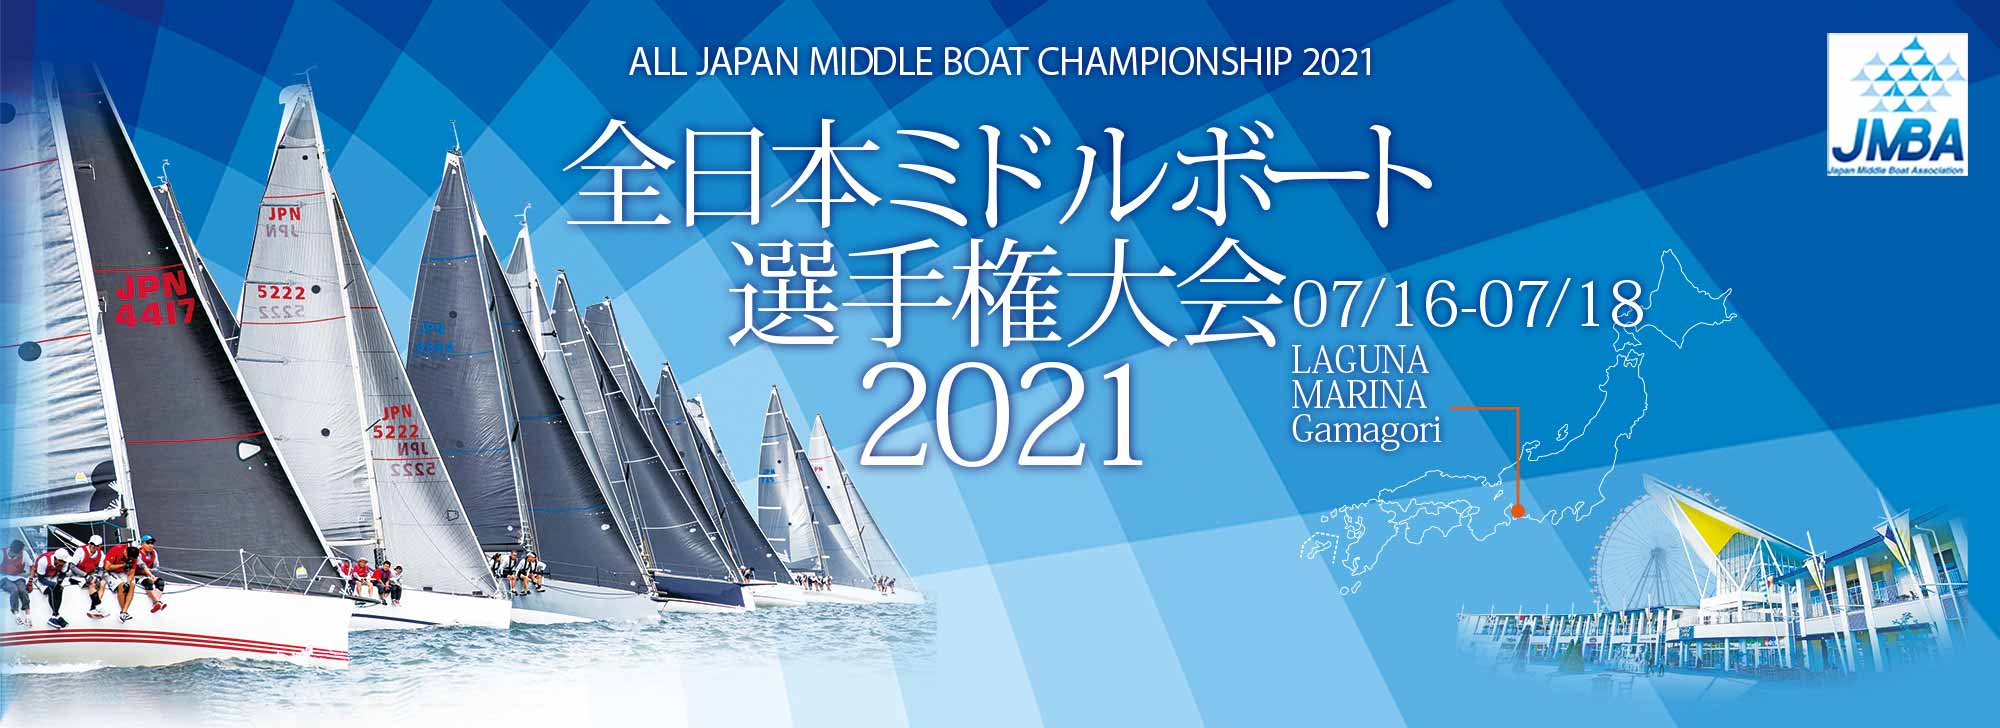 全日本ミドルボート選手権大会2020のバナー